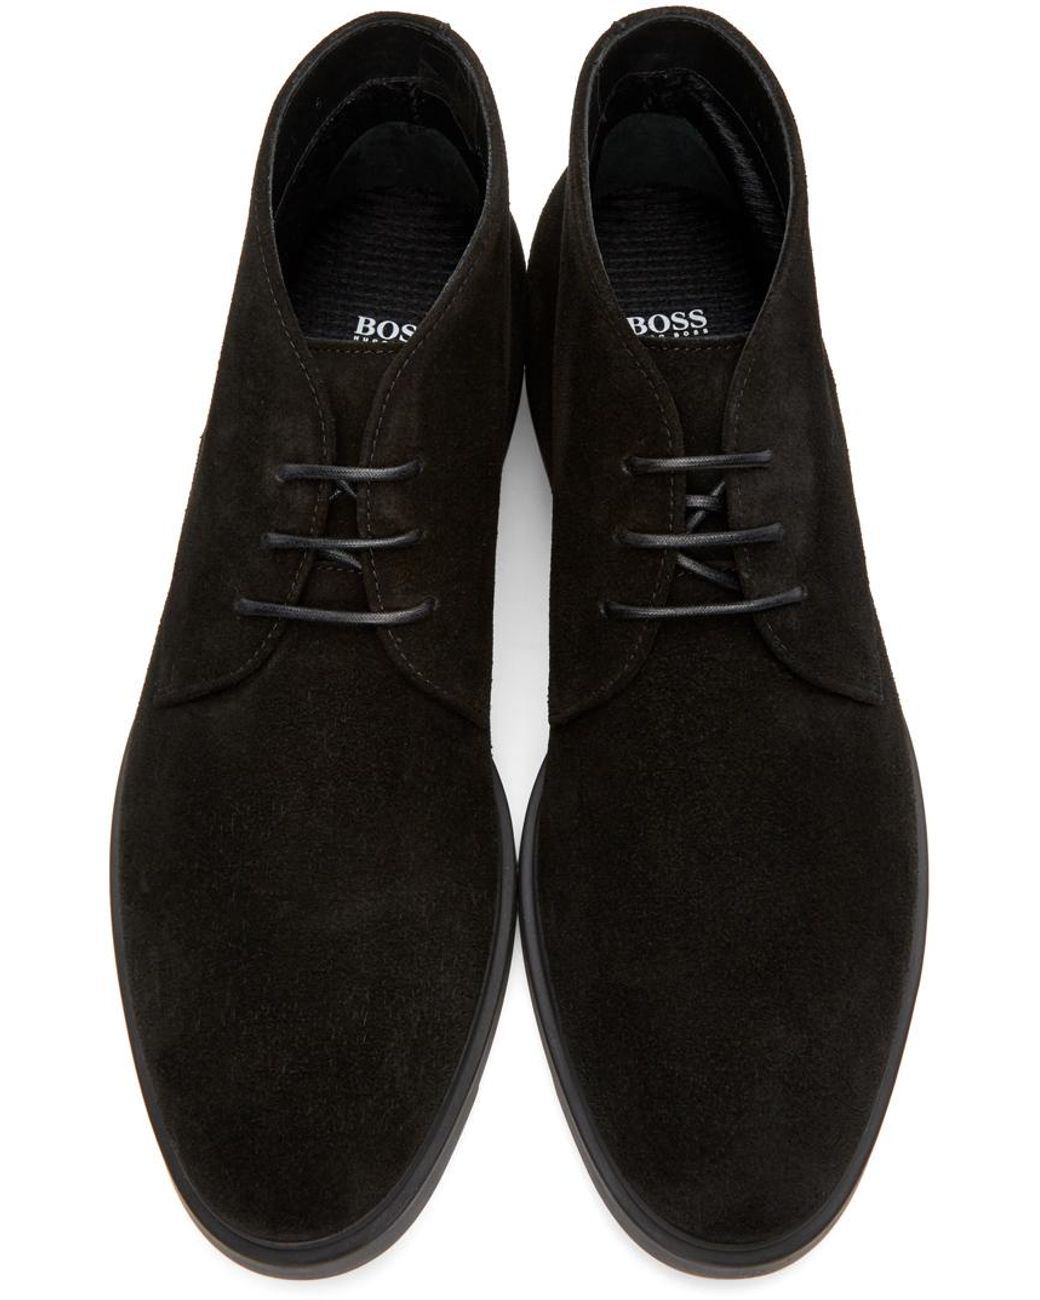 BOSS by HUGO BOSS Black Firstclass Desert Boots for Men | Lyst